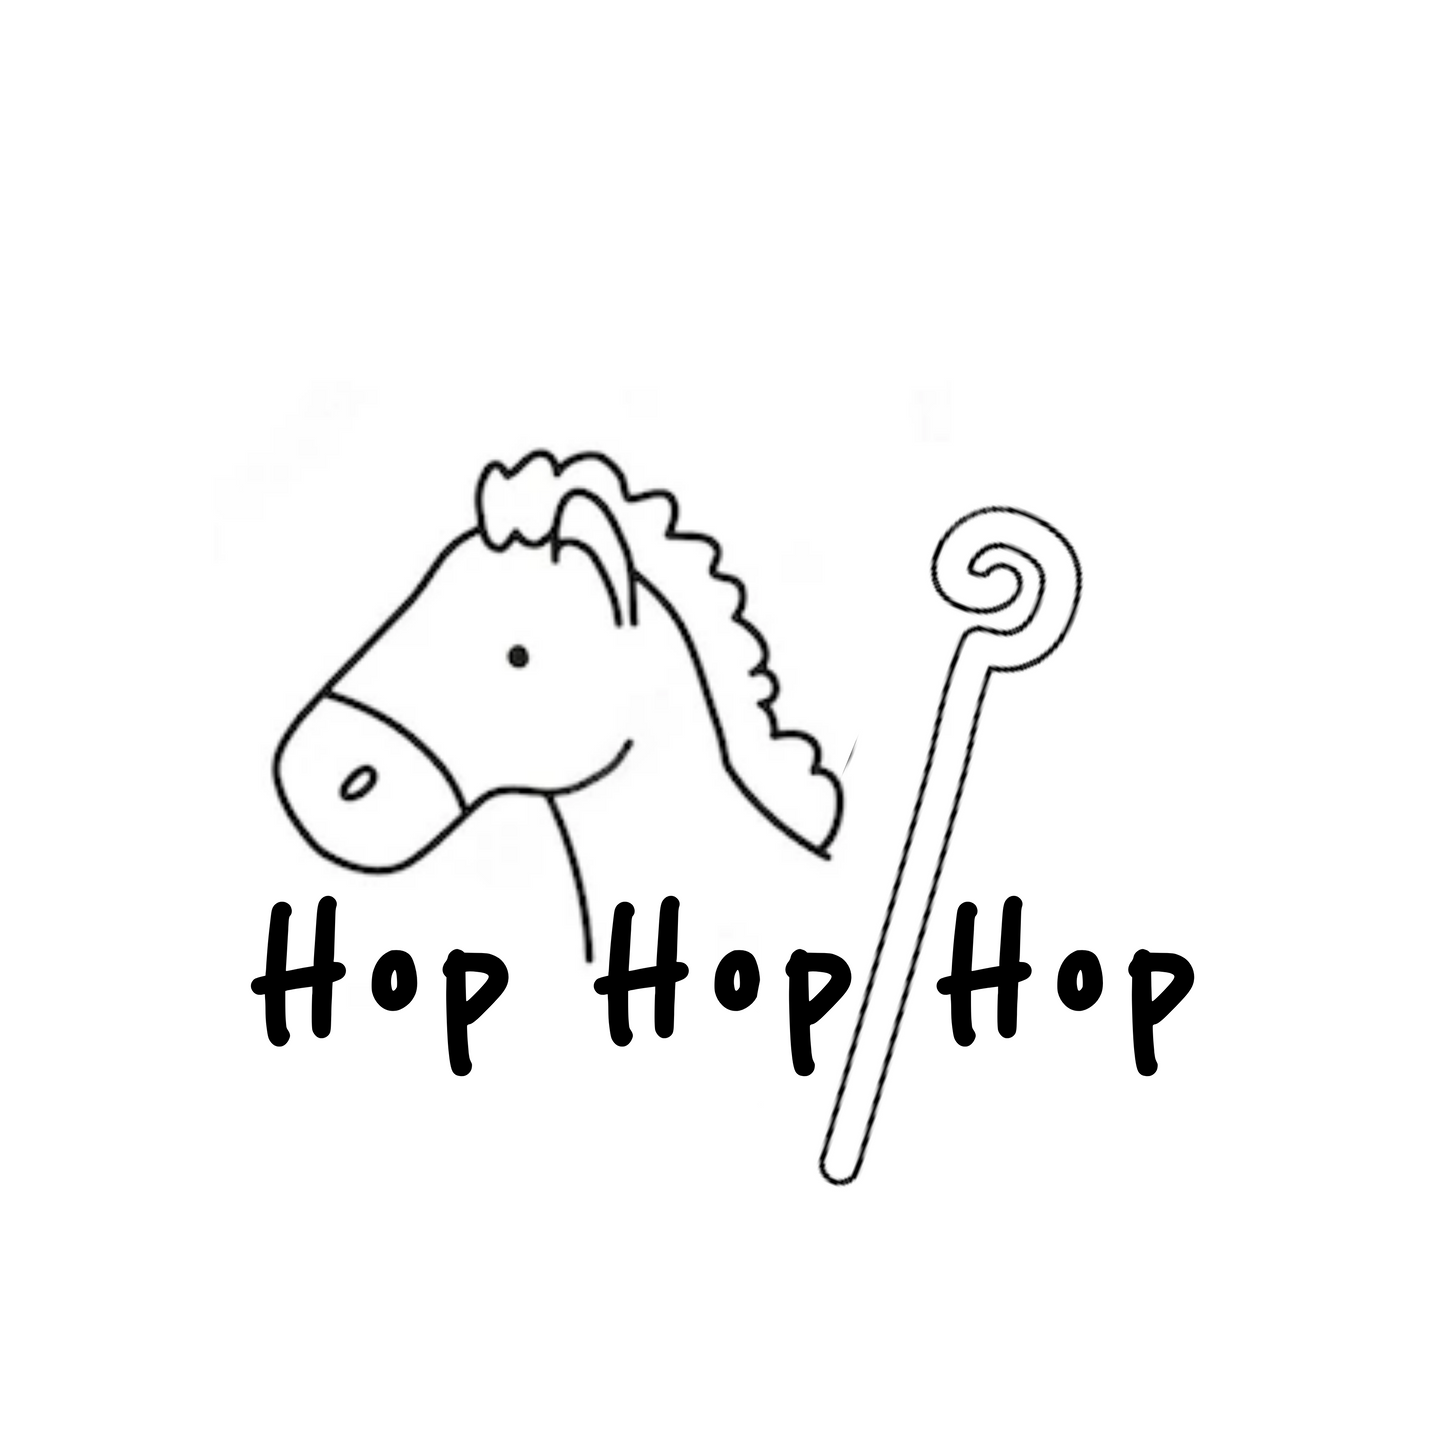 Strijkapplicatie Hop hop hop